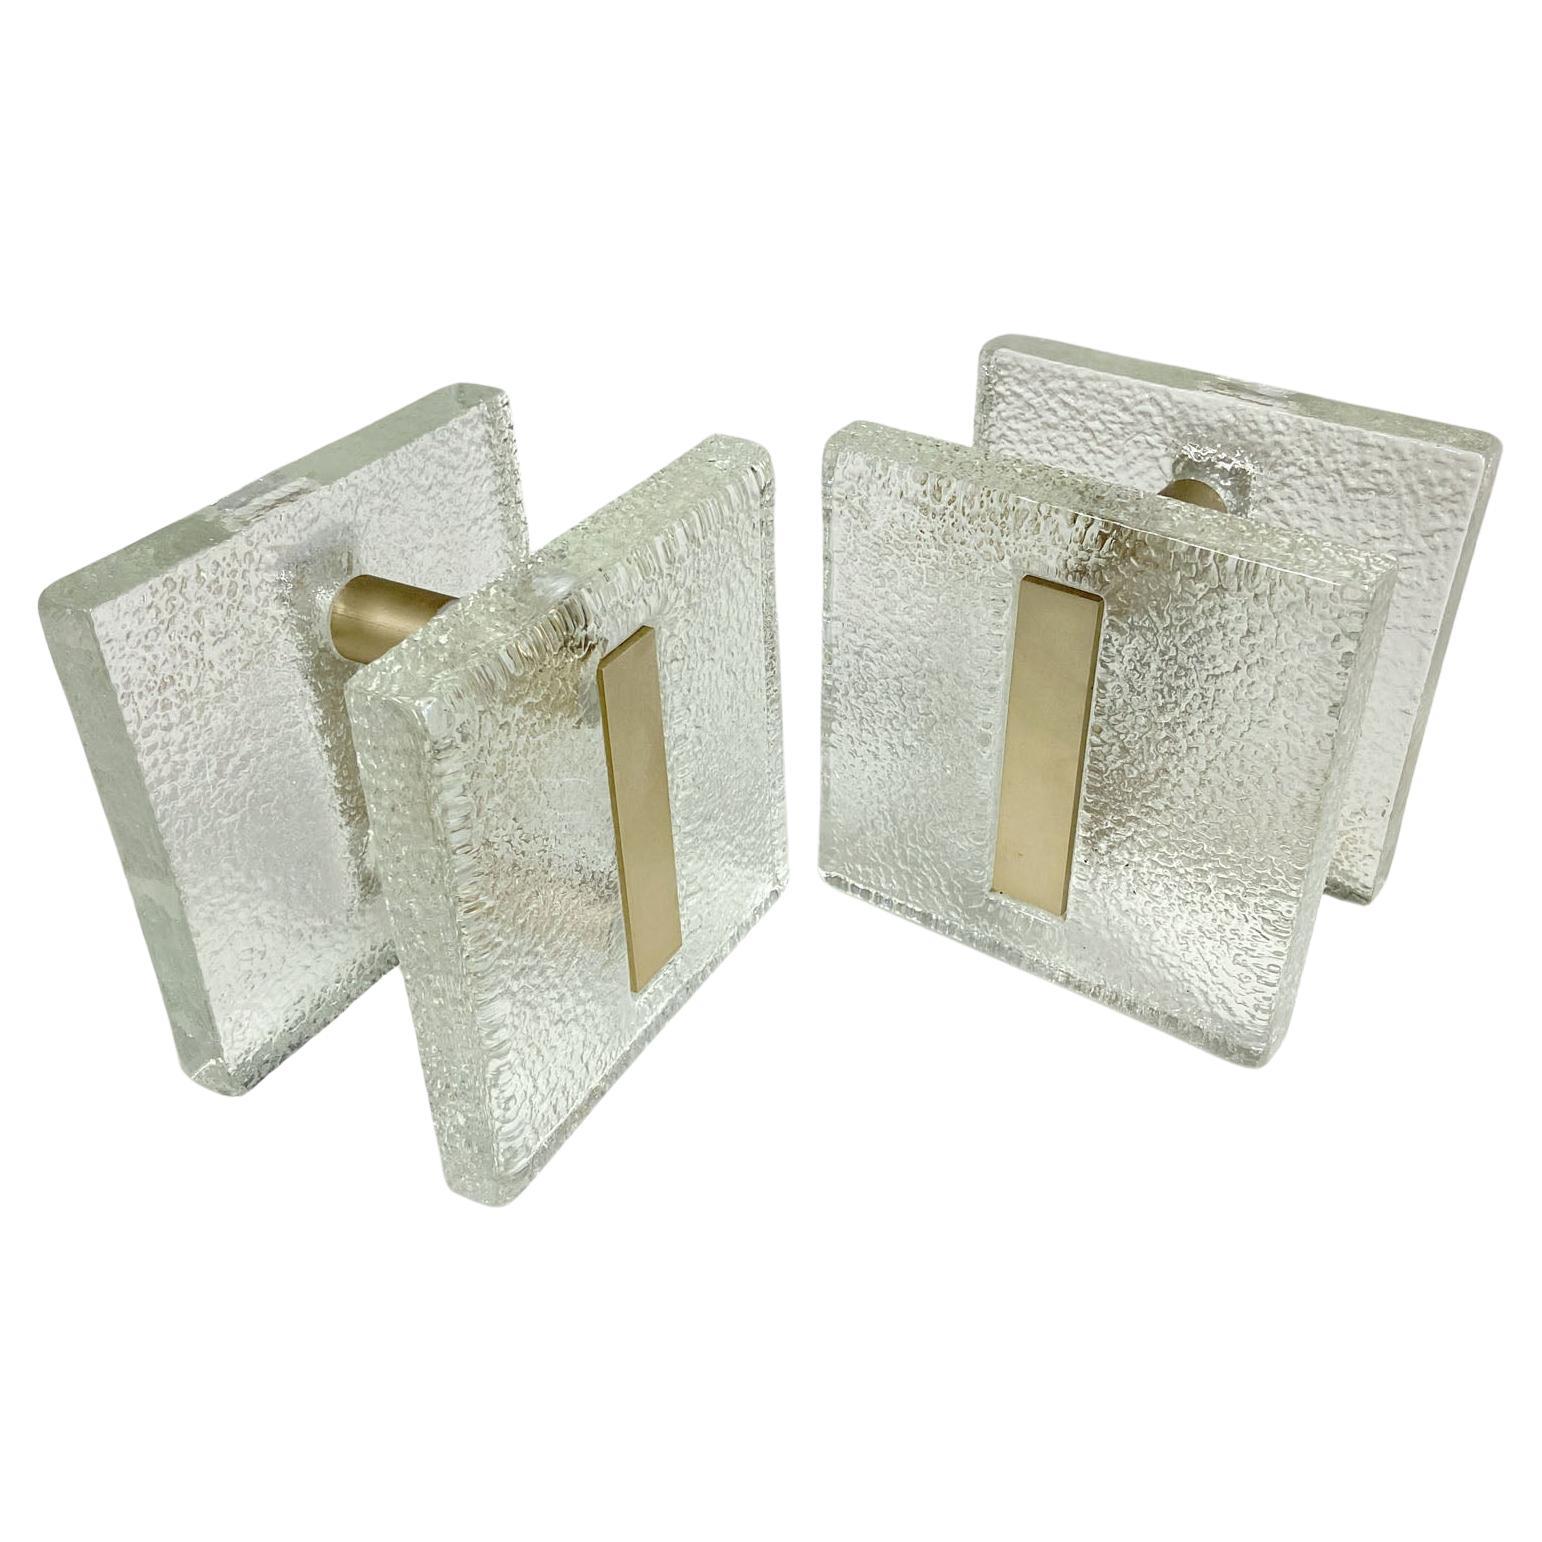 Ein Paar Doppeltürgriffe, drückend und ziehend, quadratisches, strukturiertes, klares Gussglas mit mattiertem, antikgold eloxiertem Aluminium. Sie sind für Glas- oder Holztüren konzipiert, eignen sich aber für alle Arten von Türen. Die Glasplatten